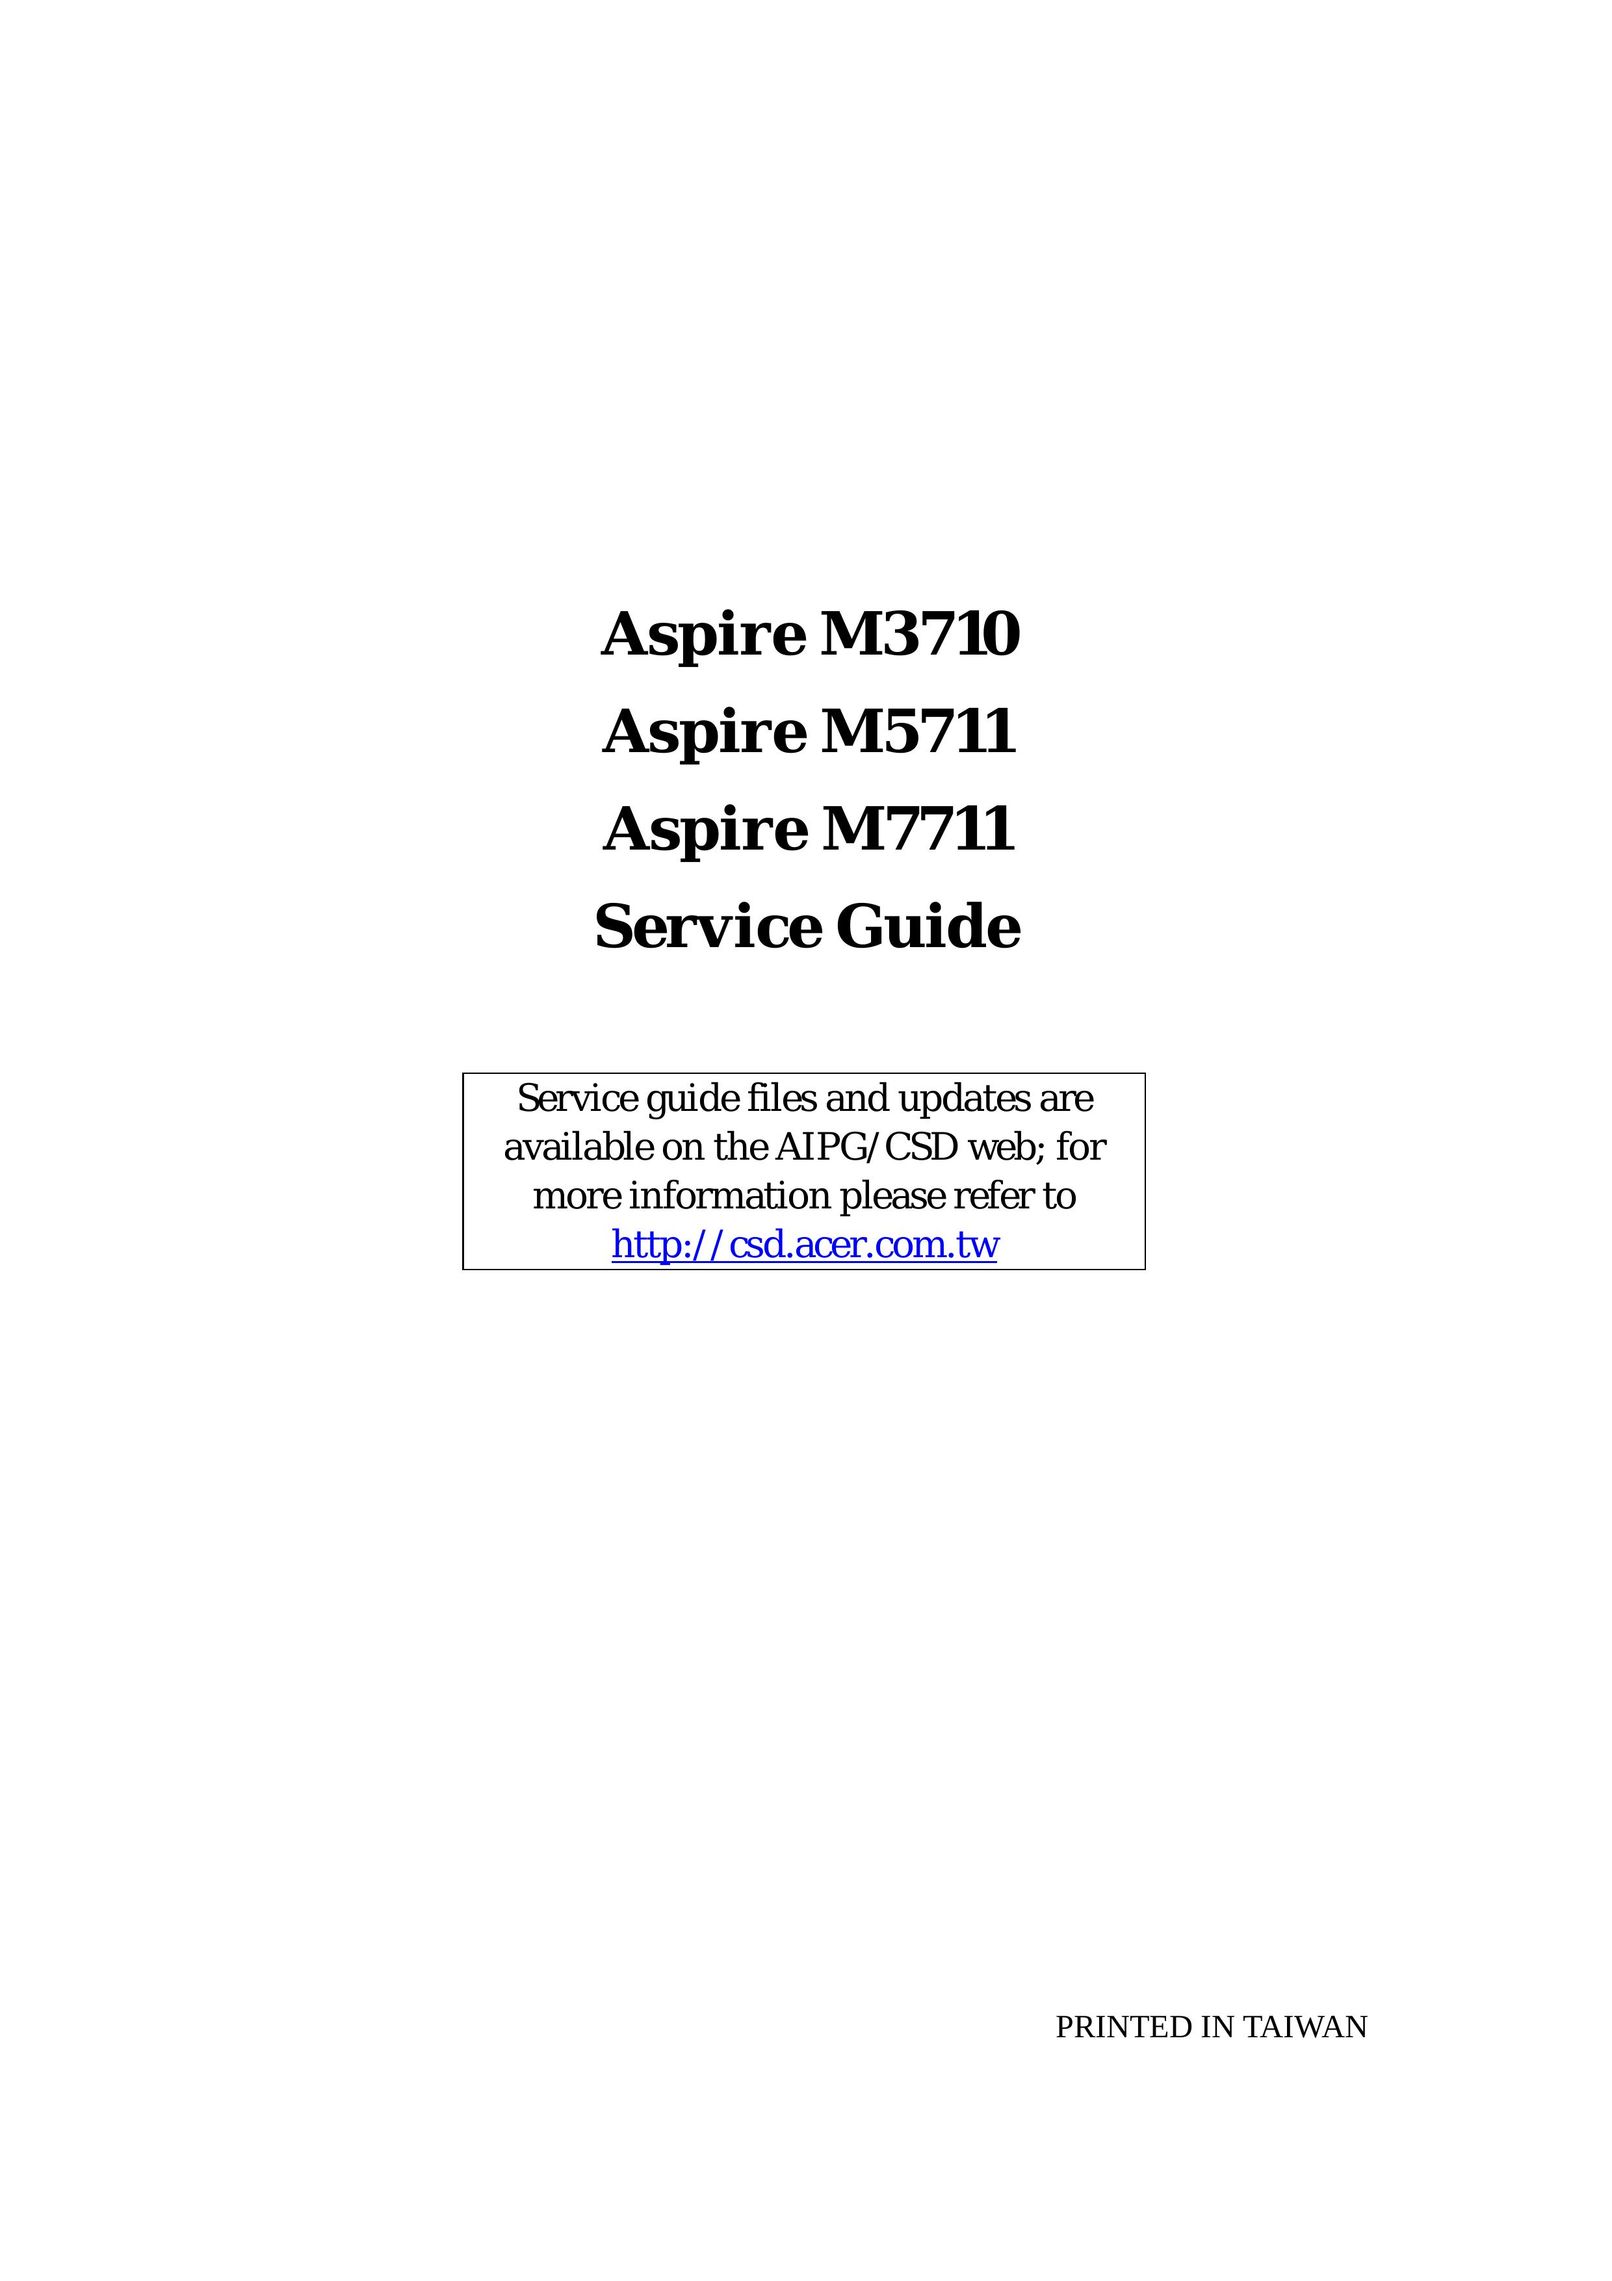 Aspire Digital M3710 Computer Hardware User Manual